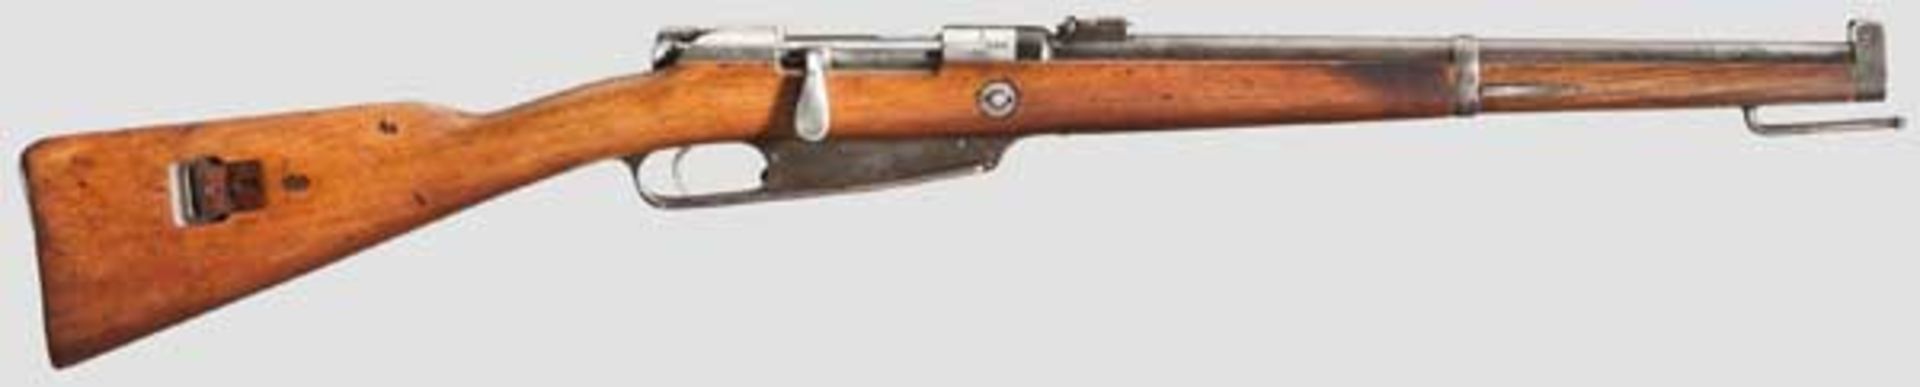 Gewehr 91, V.C.S. 1891 Kal. 8 x 57, Nr. 618. Nummerngleich inkl. Schrauben. Blanker Lauf. Klappen-